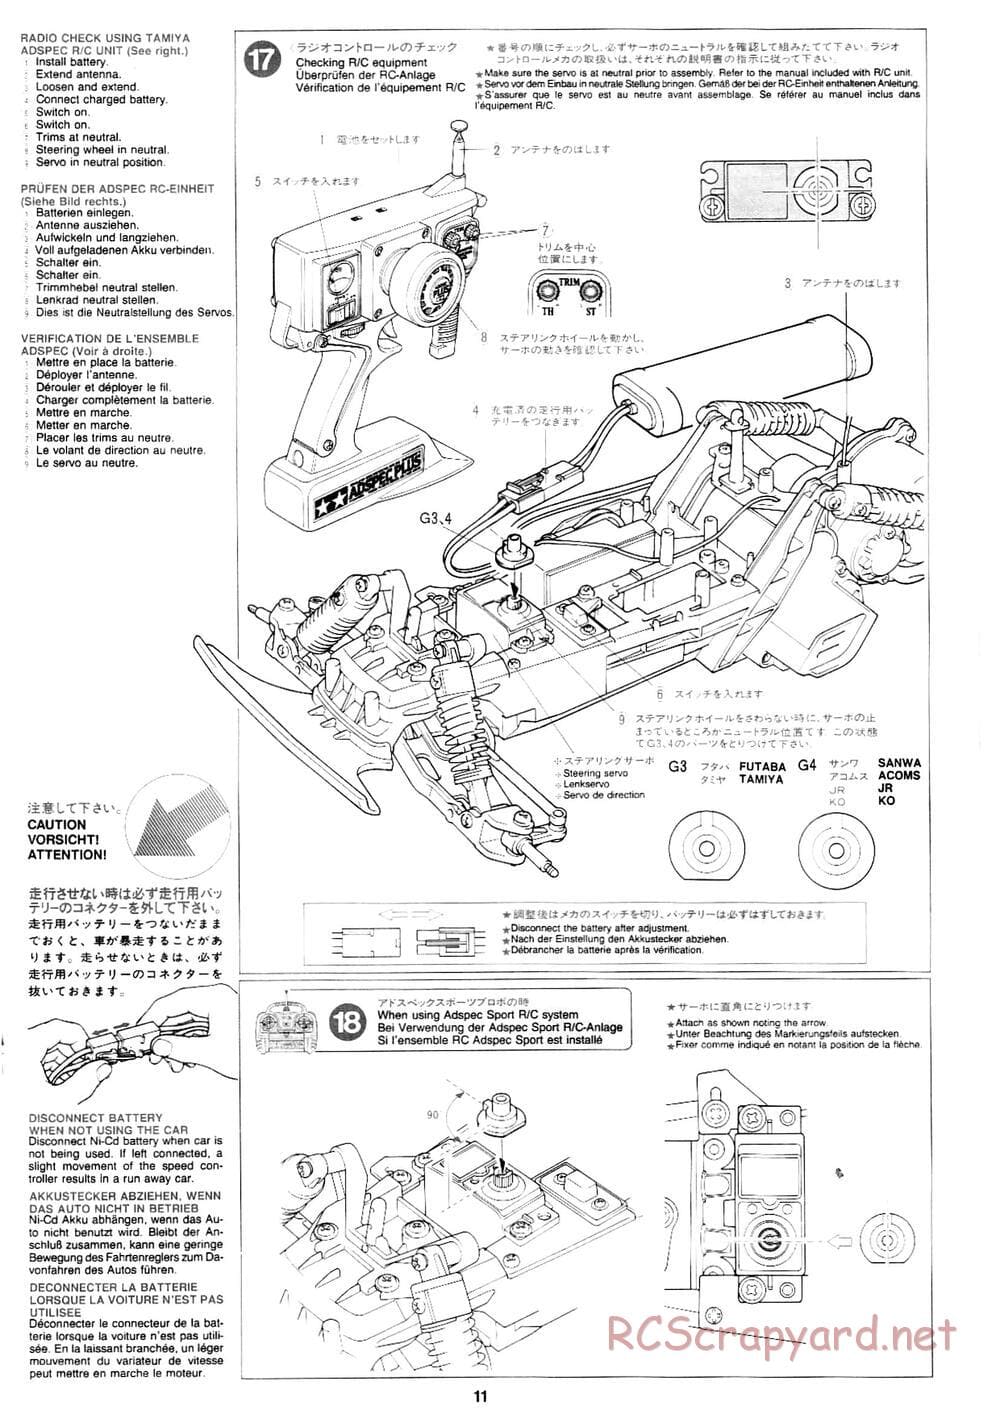 Tamiya - Mad Bull Chassis - Manual - Page 11